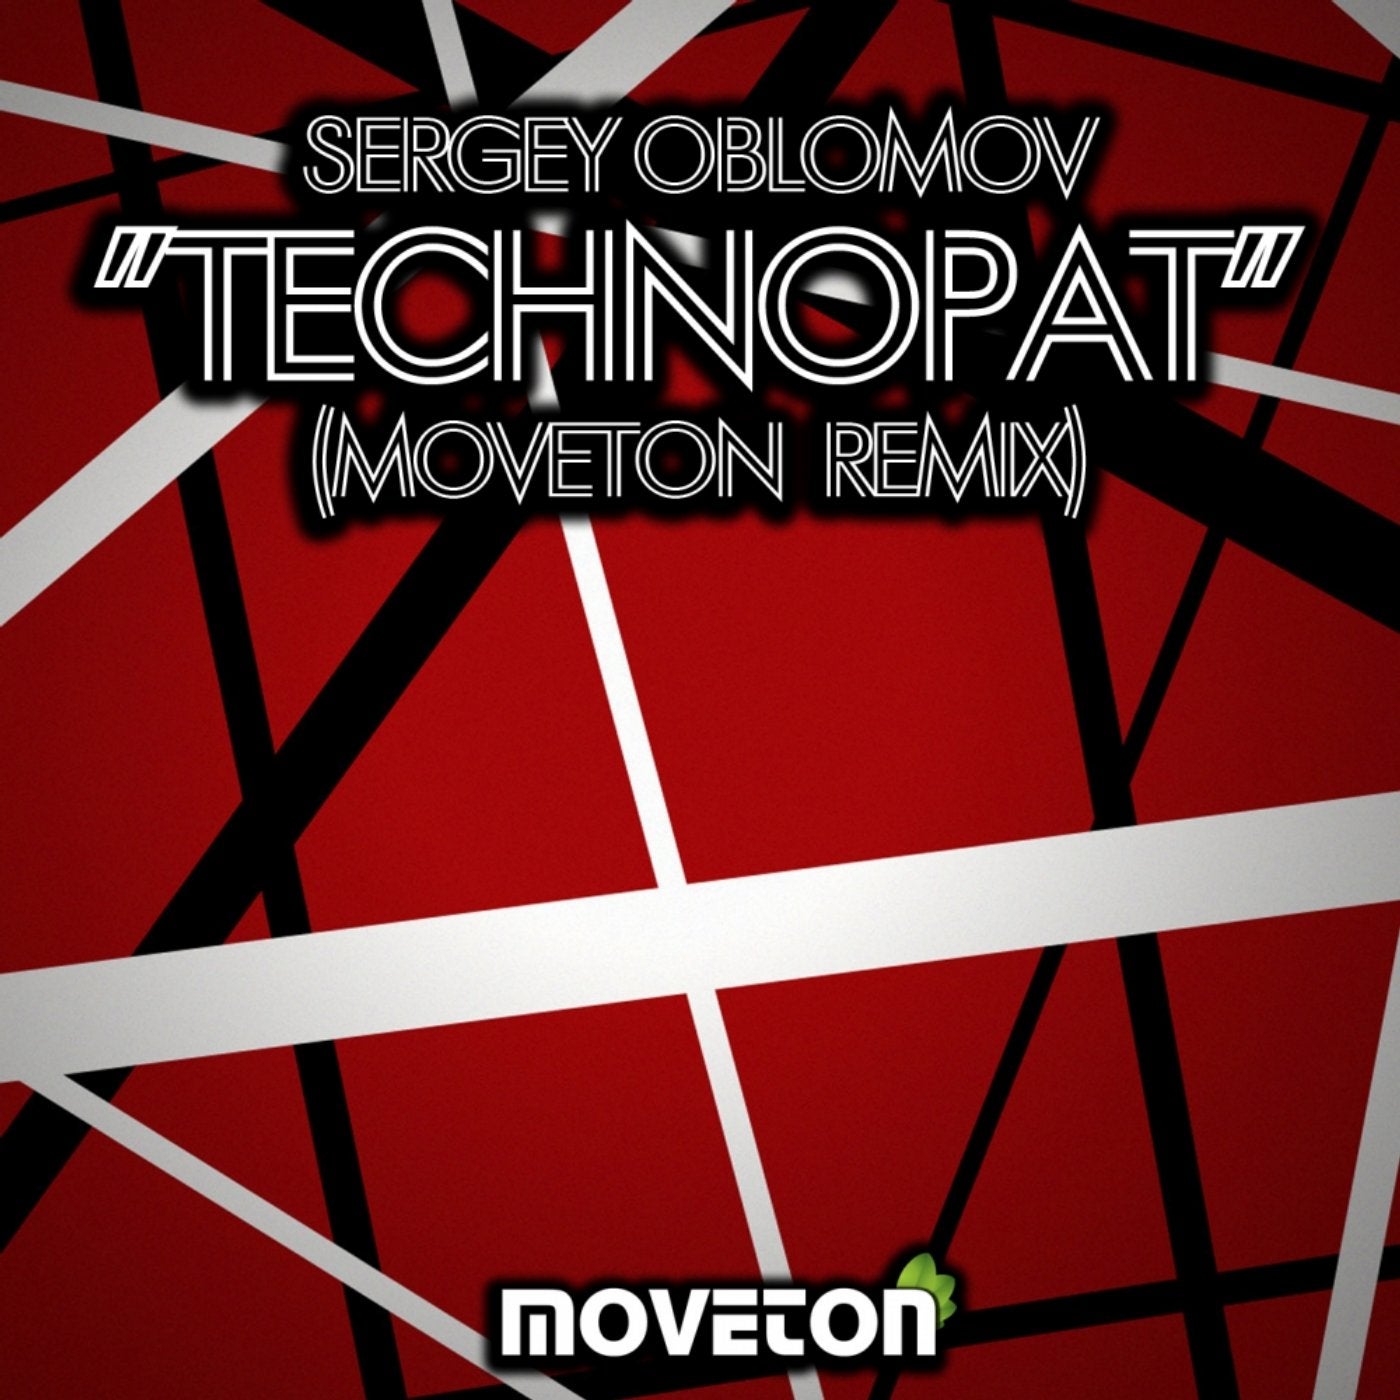 Technopat (Moveton Remix)